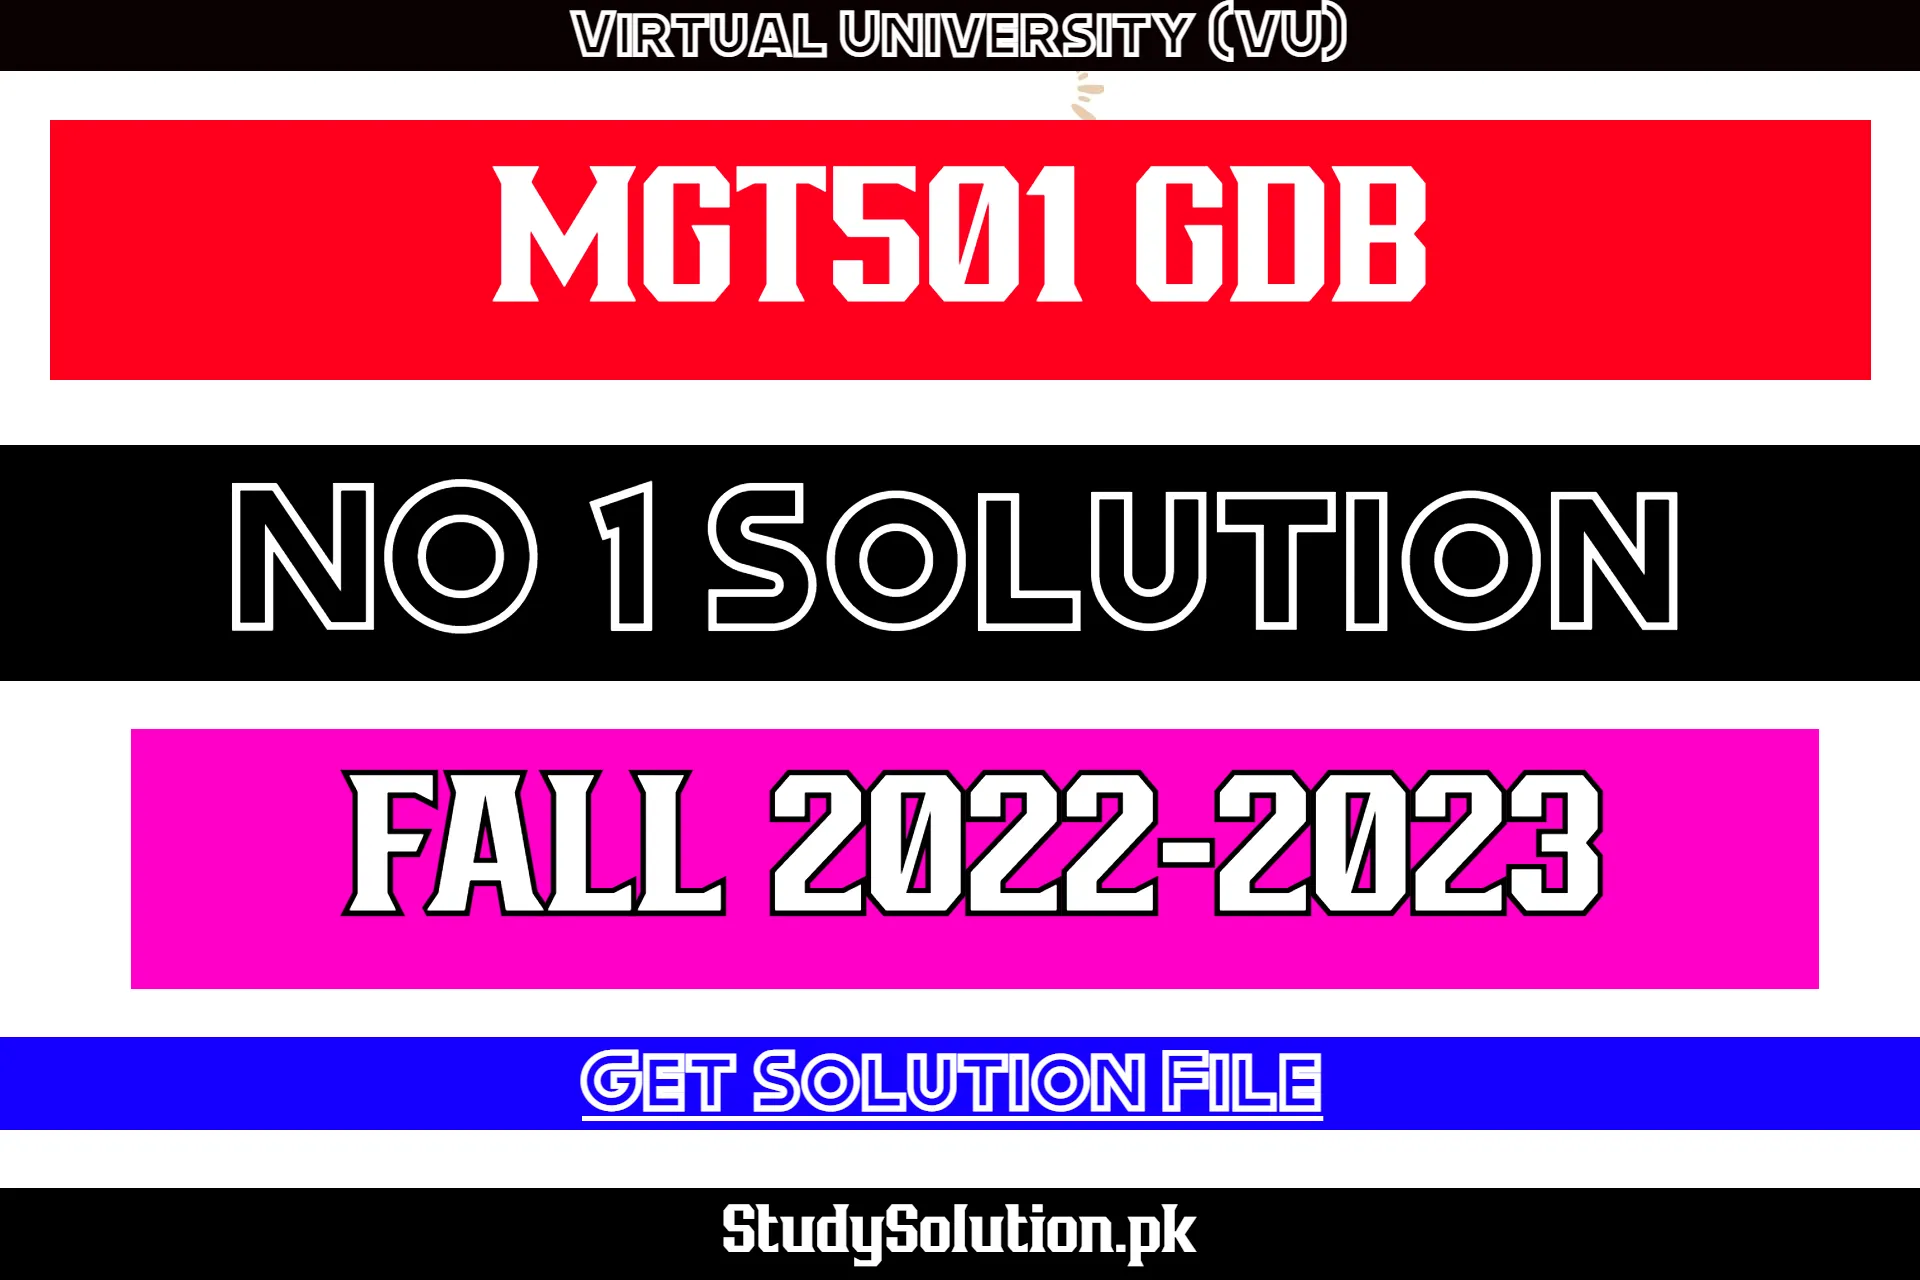 MGT501 GDB No 1 Solution Fall 2022